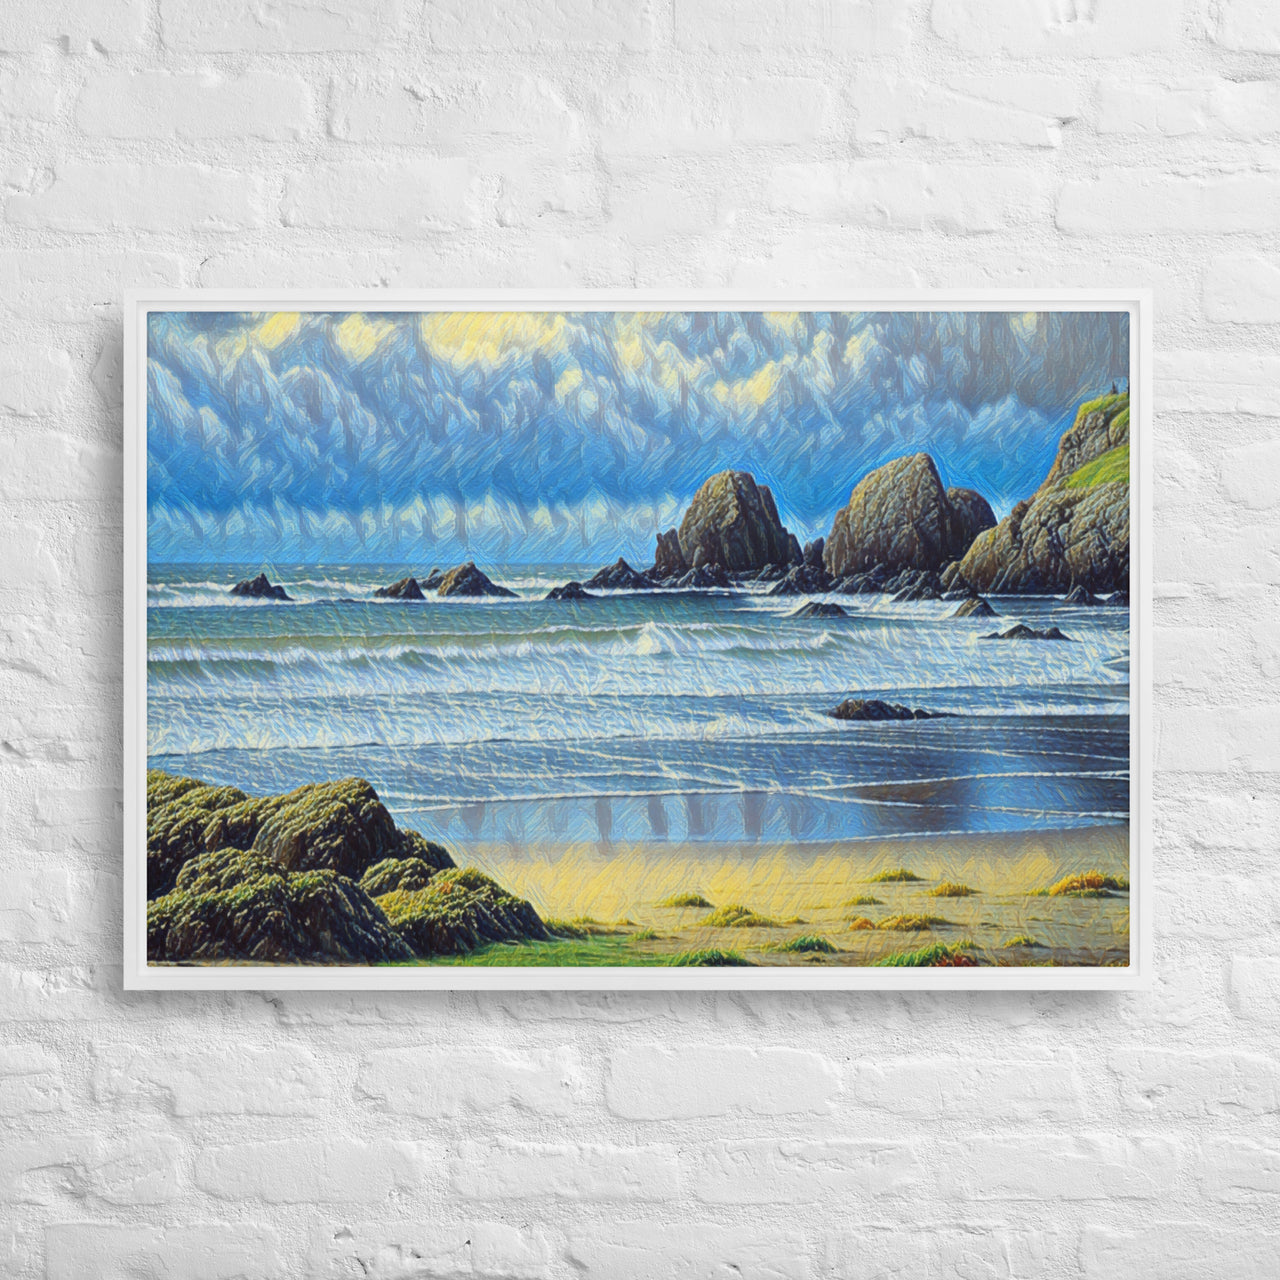 Oregon Coast - Digital Art - Framed canvas FREE SHIPPING